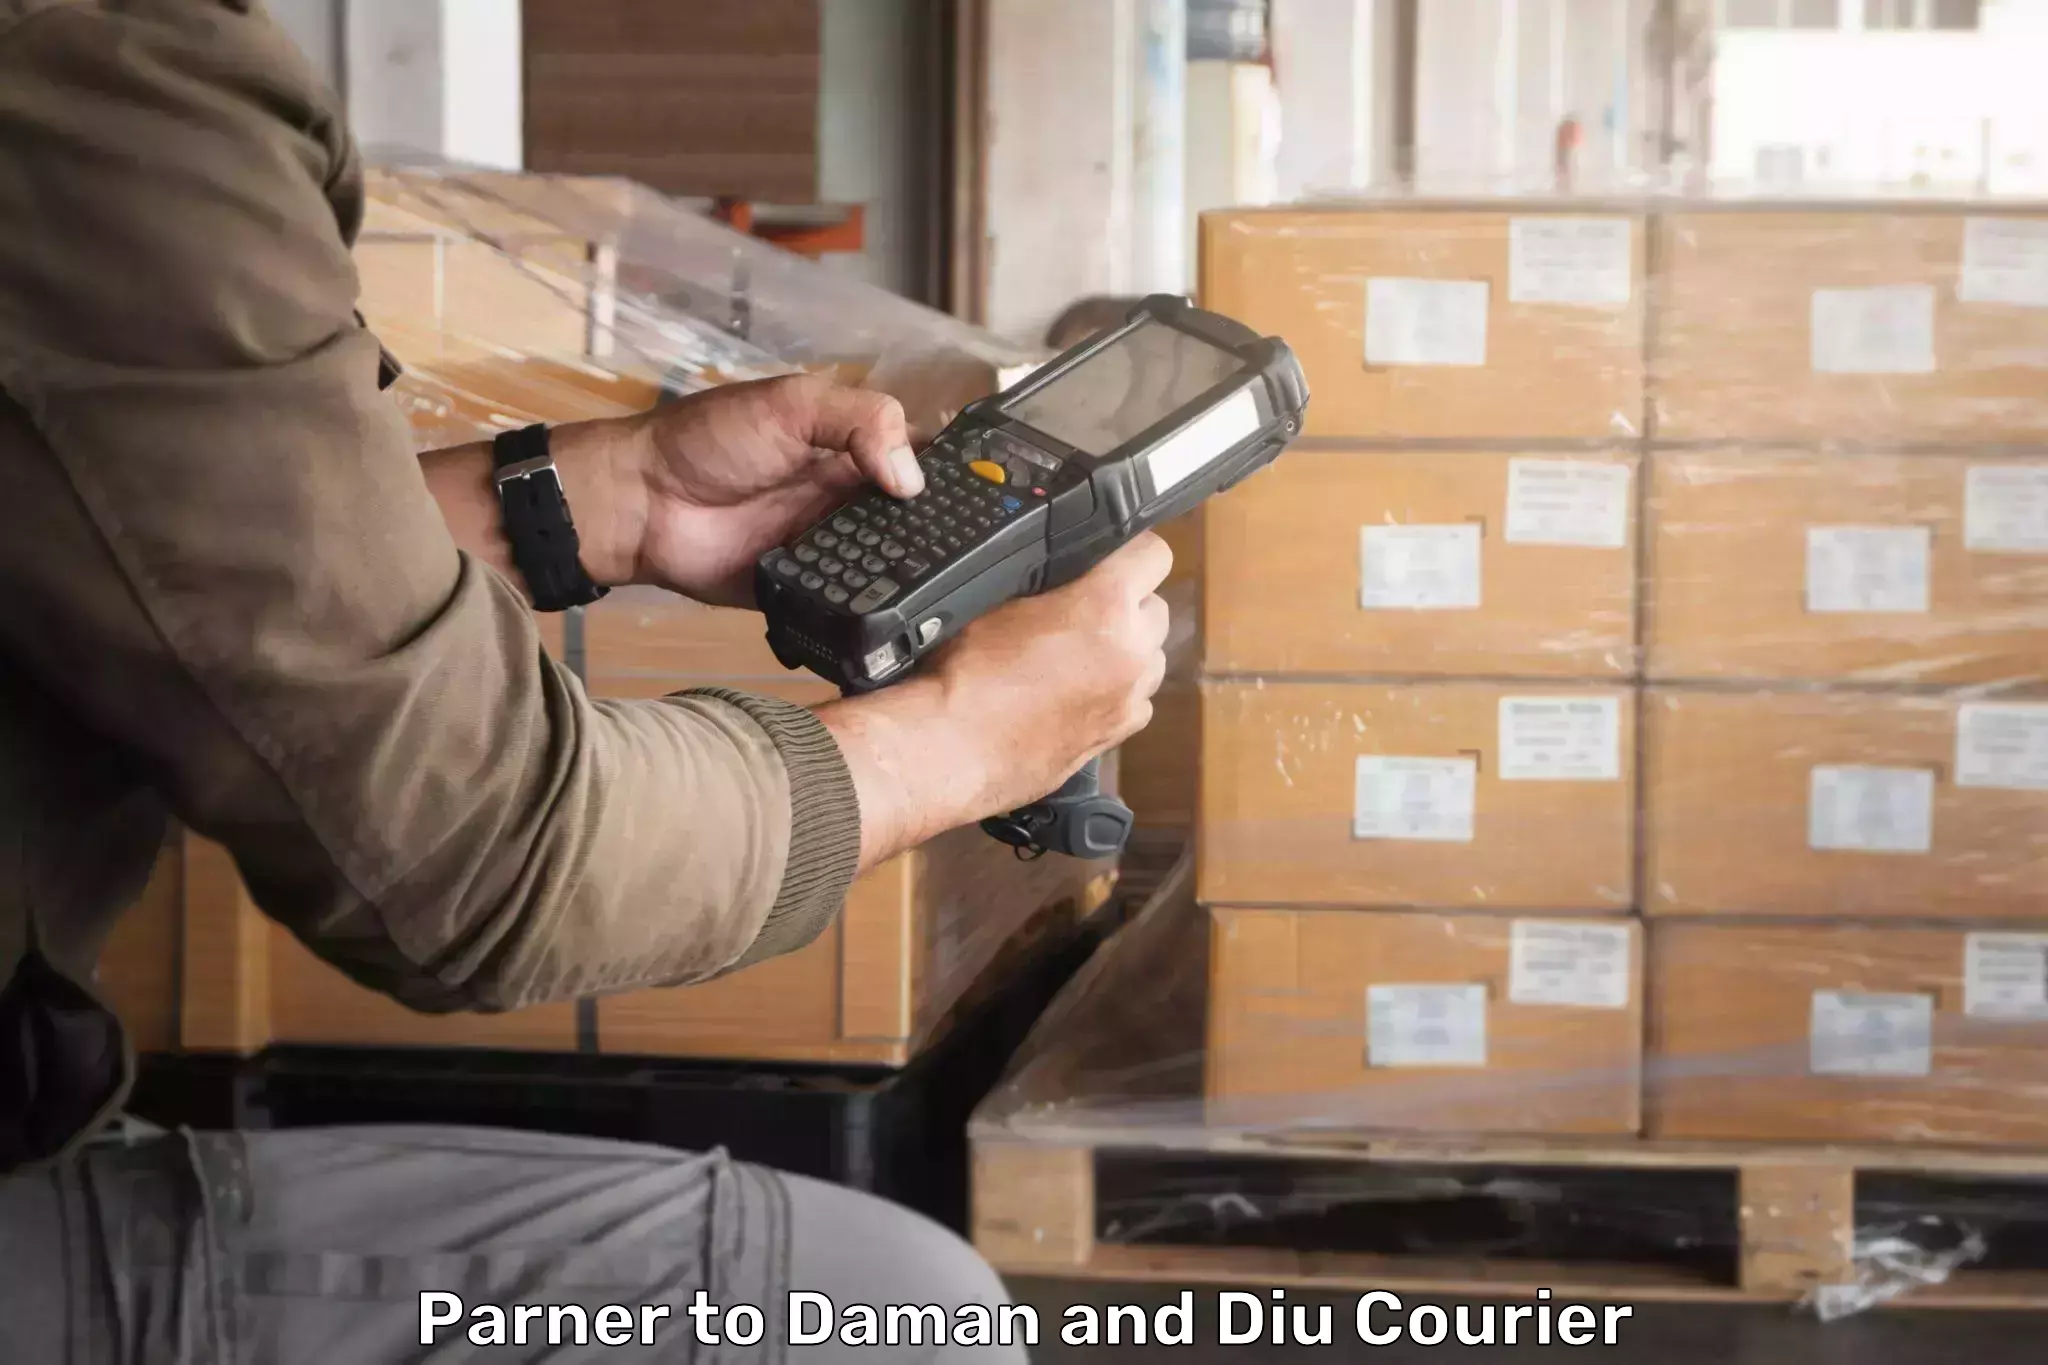 Comprehensive parcel tracking Parner to Diu